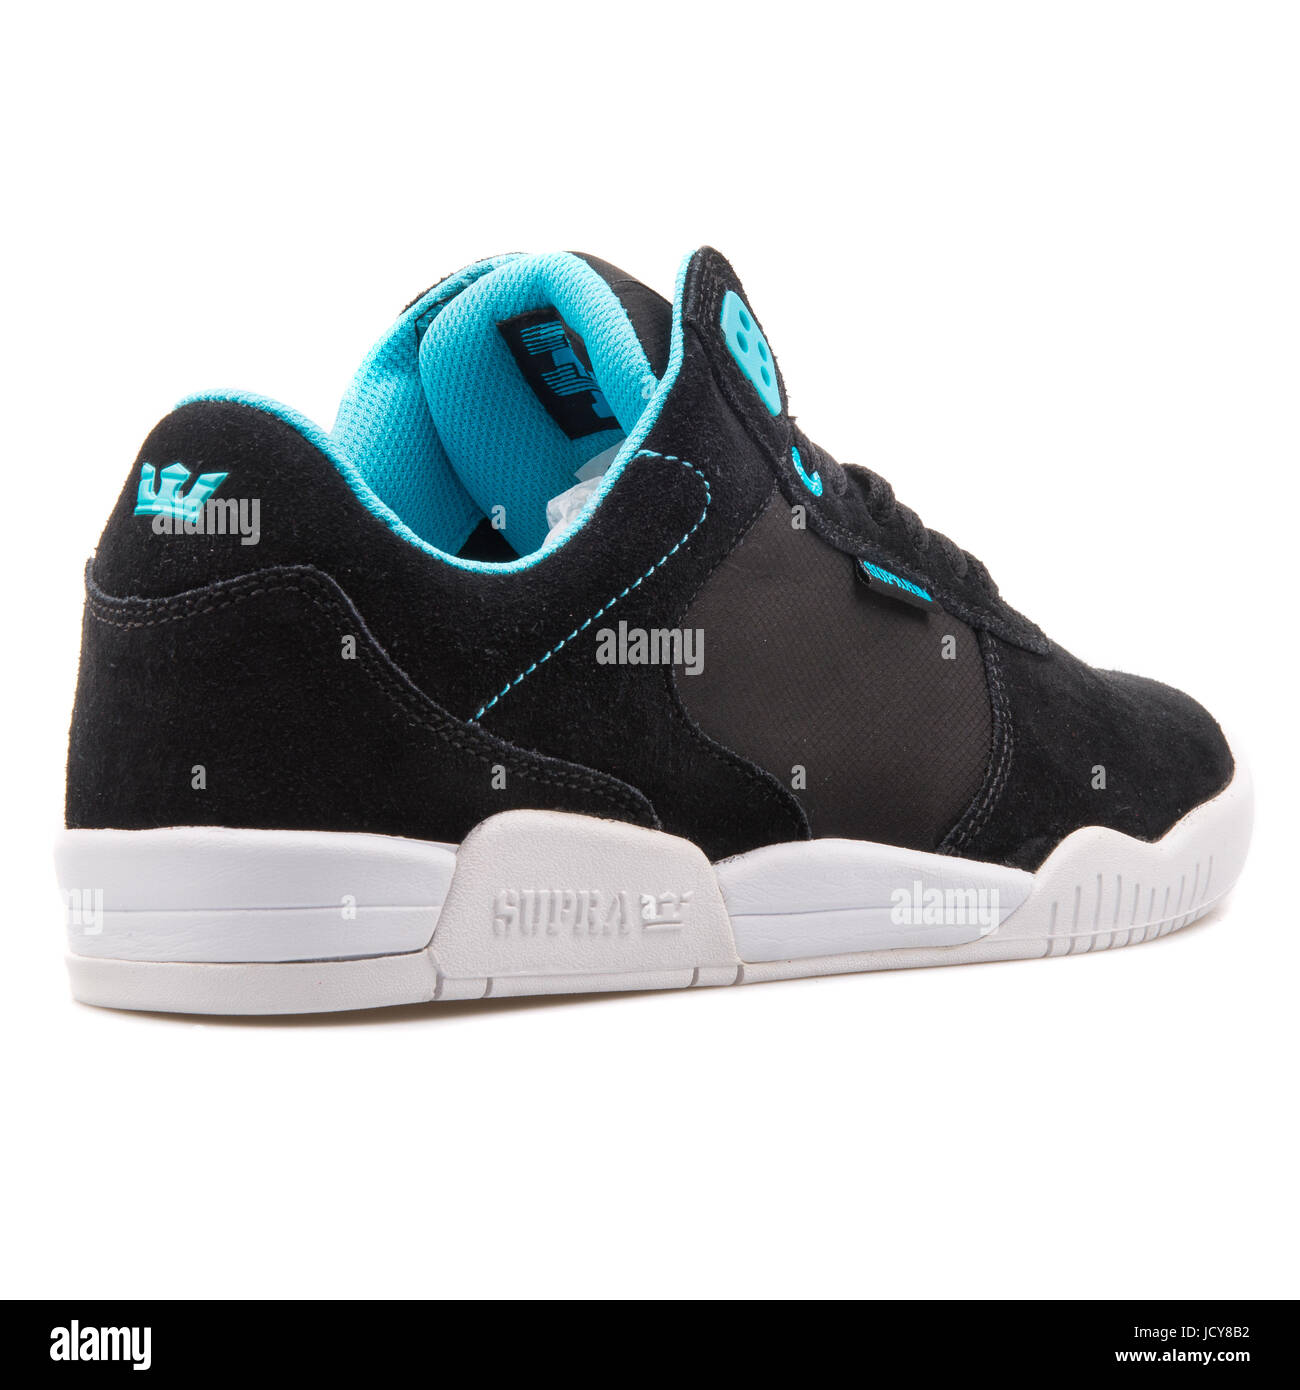 Ellington supra negro y azul para hombres zapatos deportivos - S73027  Fotografía de stock - Alamy